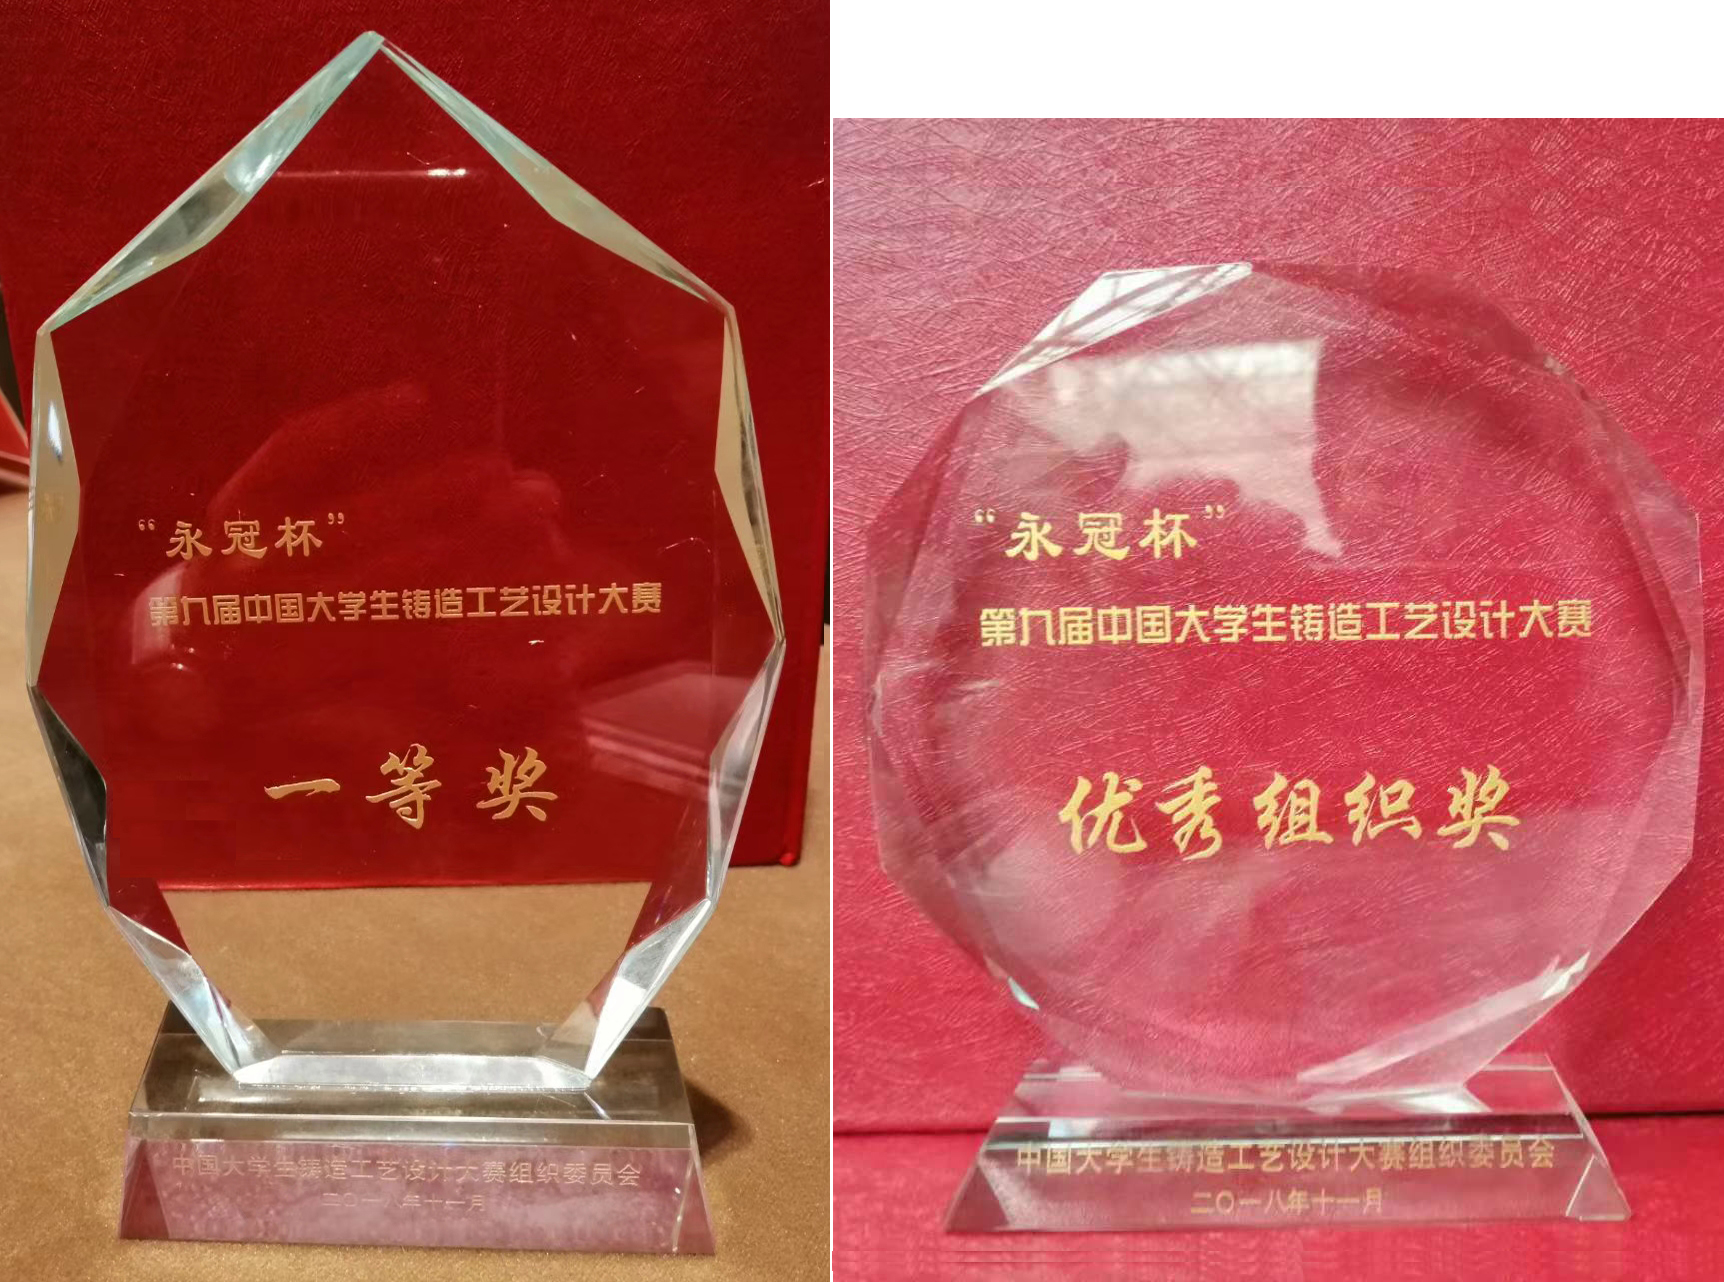 我校学生和教师参加“永冠杯”铸造工艺设计大赛颁奖典礼